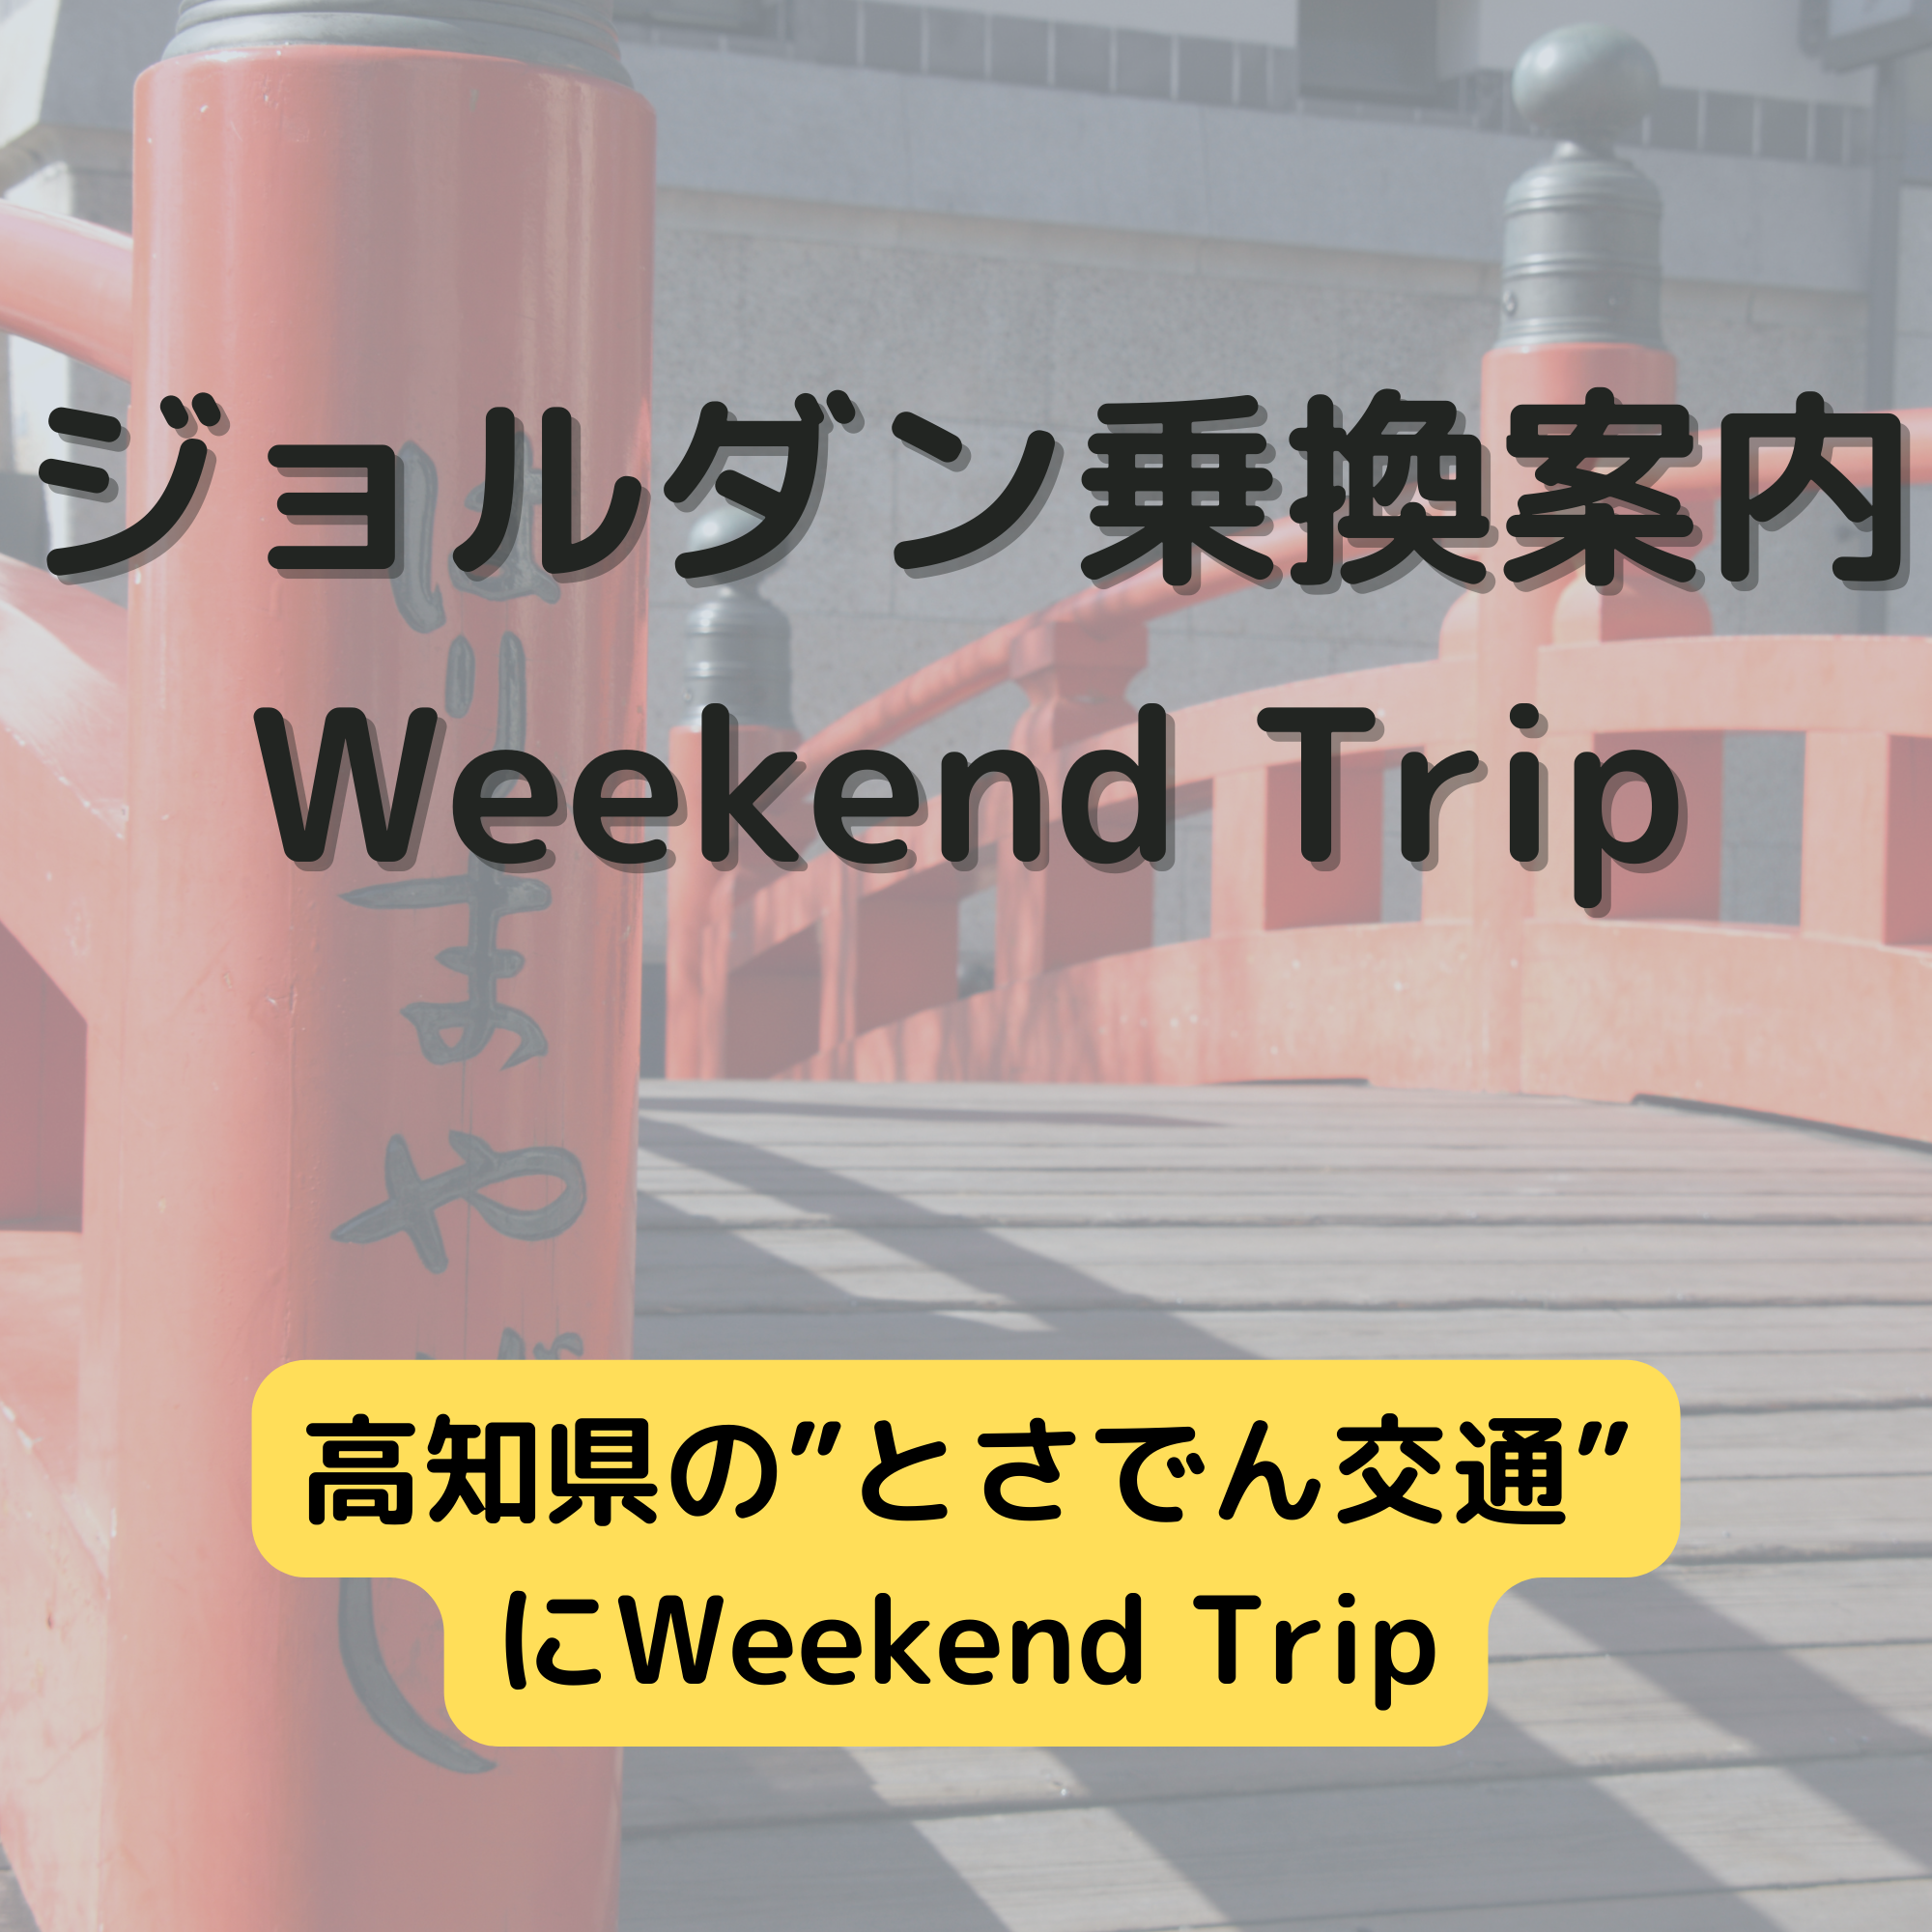 ジョルダン乗換案内　Weekend Trip-高知県の”とさでん交通”-